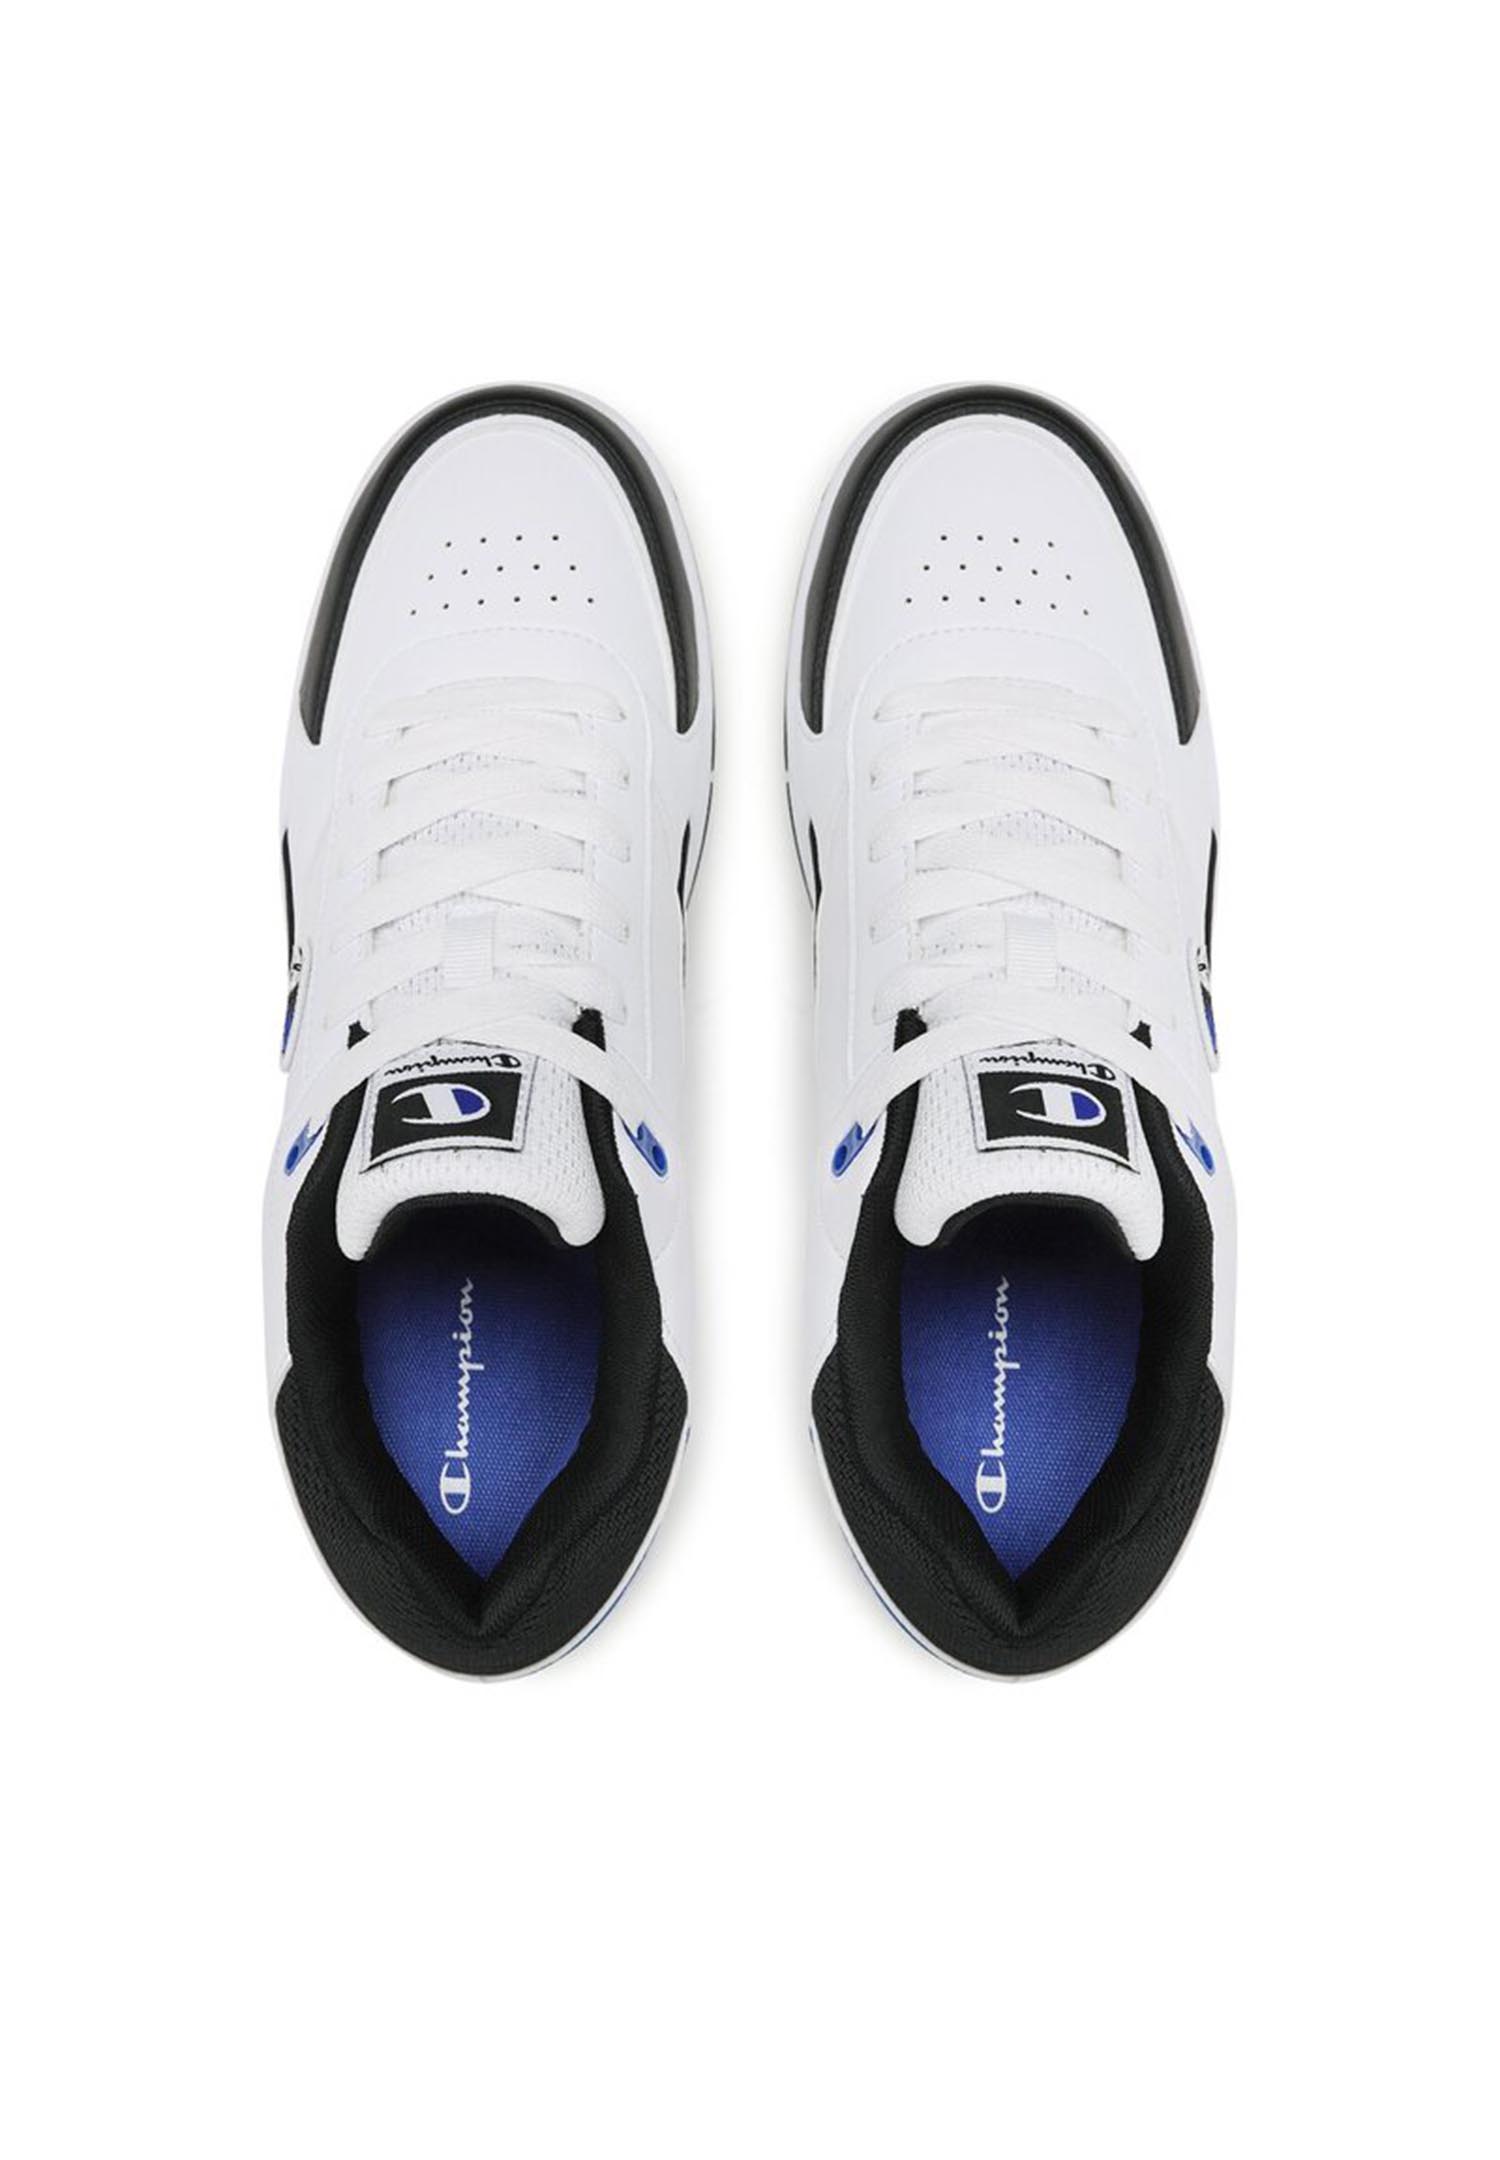 Champion REBOUND HERITAGE LOW Herren Sneaker S22030-CHA-WW006 weiß/schwarz/blau